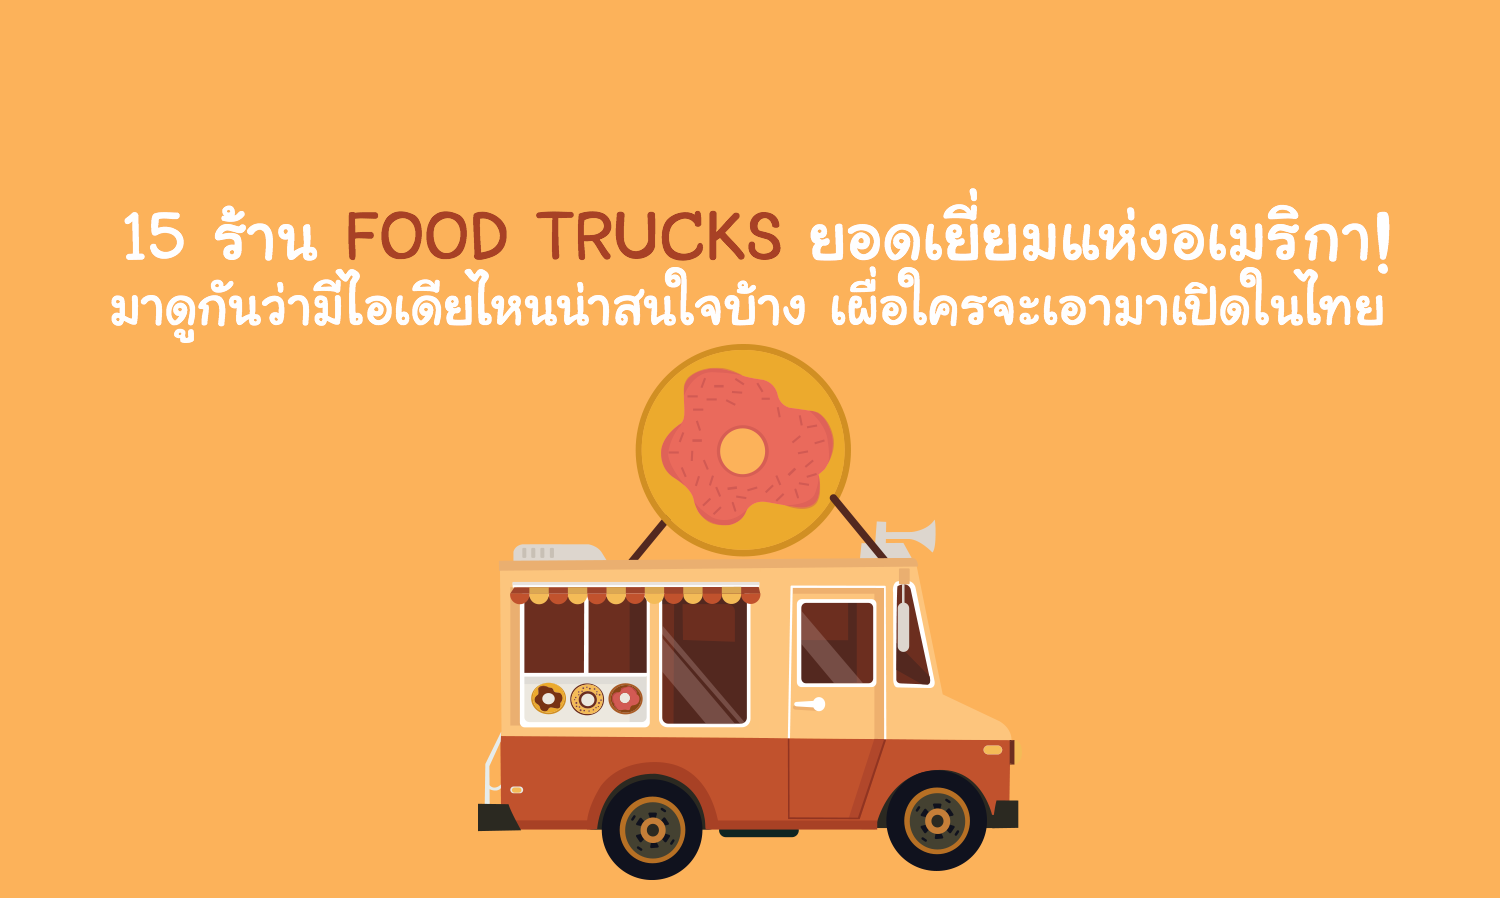 15 ร้าน Food Trucks ยอดเยี่ยมแห่งอเมริกา! มาดูกันว่ามีไอเดียไหนน่าสนใจบ้าง เผื่อใครจะเอามาเปิดในไทย 